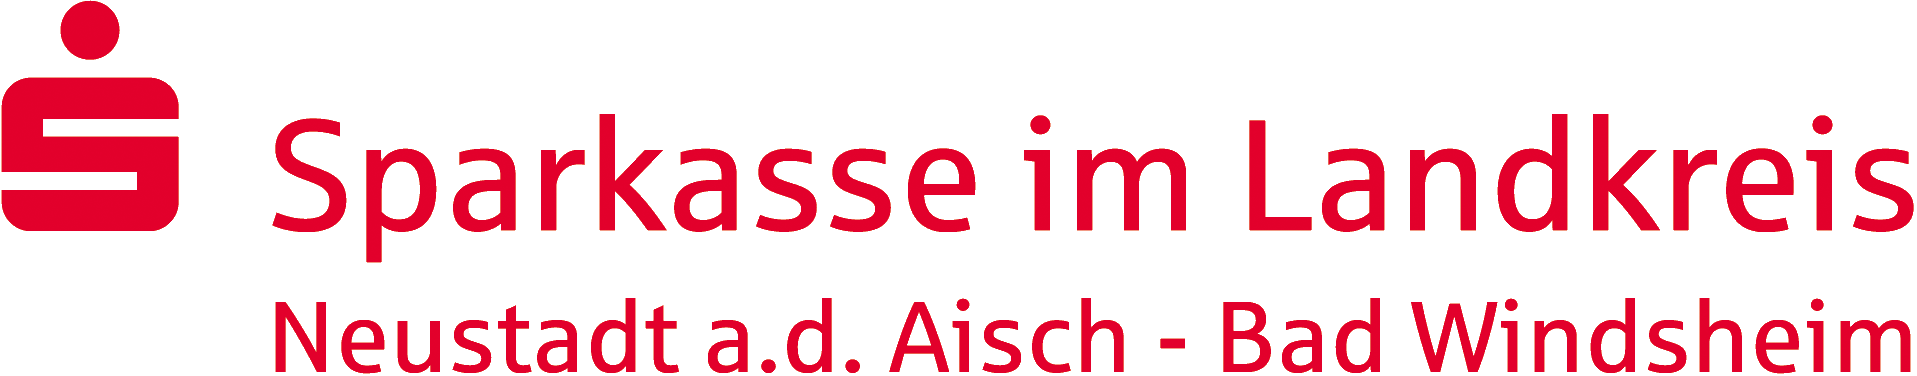 Sparkasse im Lk. Neustadt a.d. Aisch - Bad Windsheim